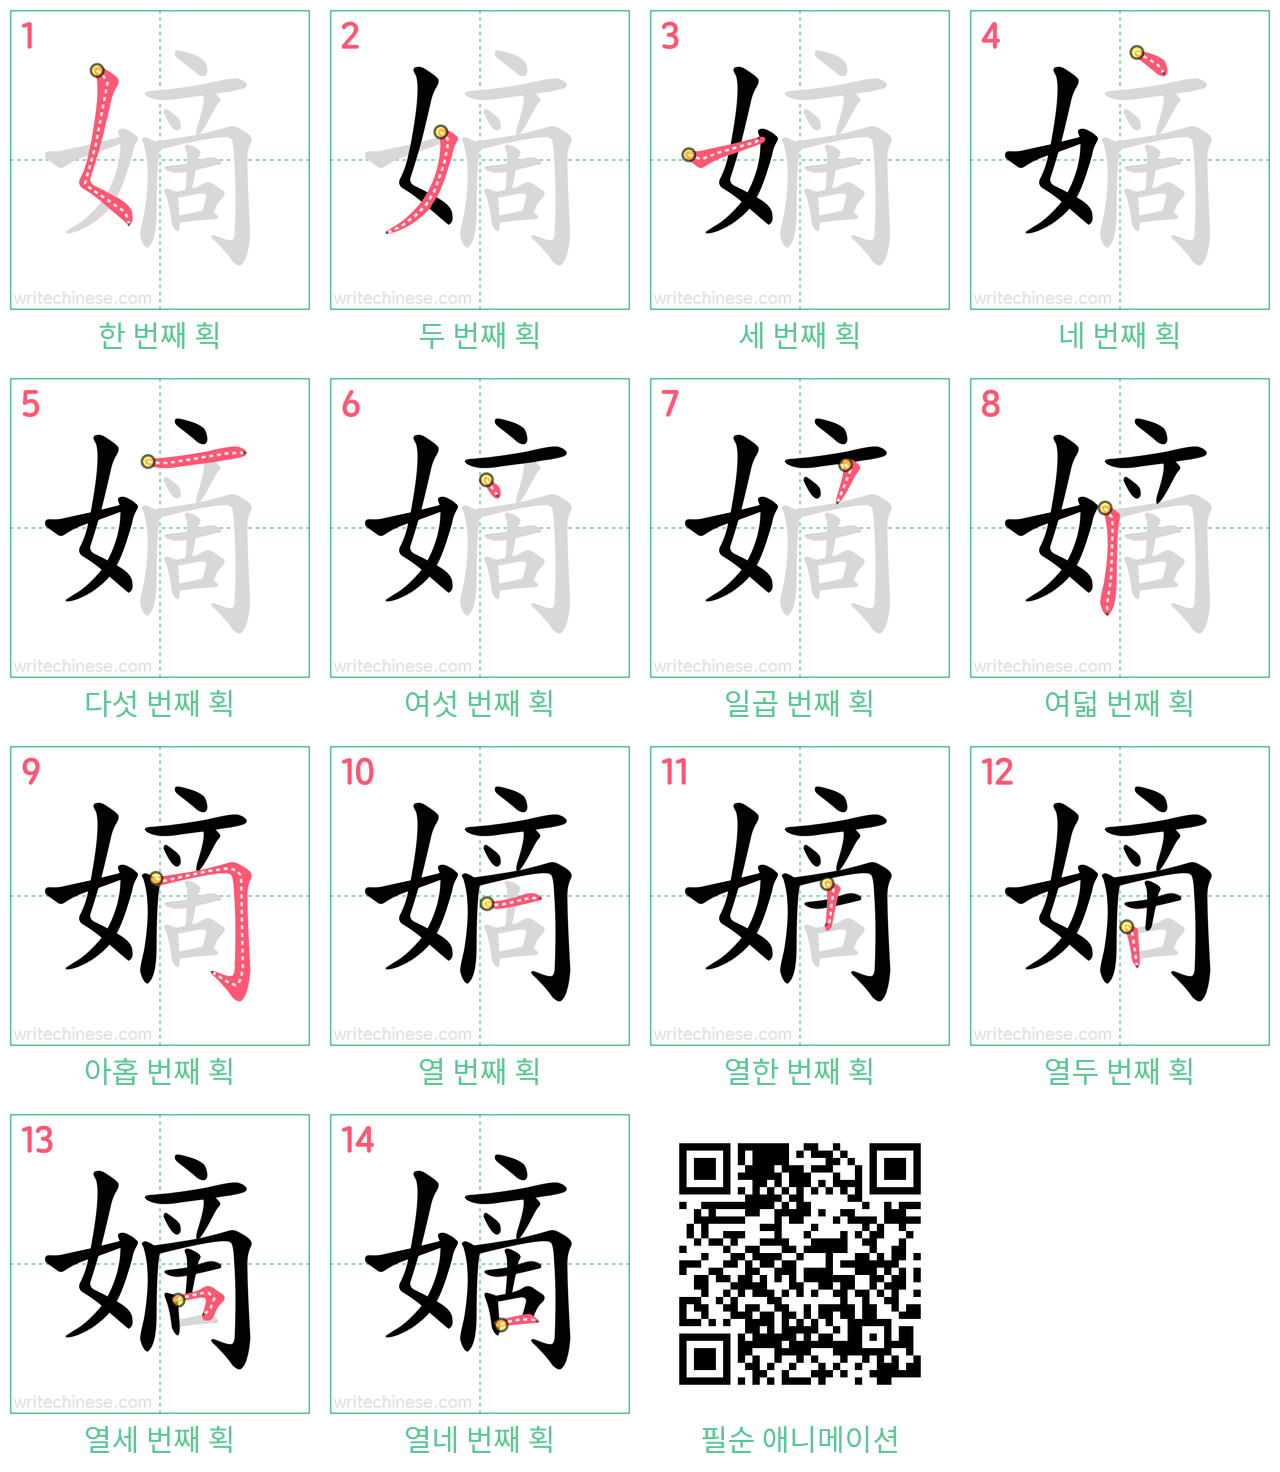 嫡 step-by-step stroke order diagrams